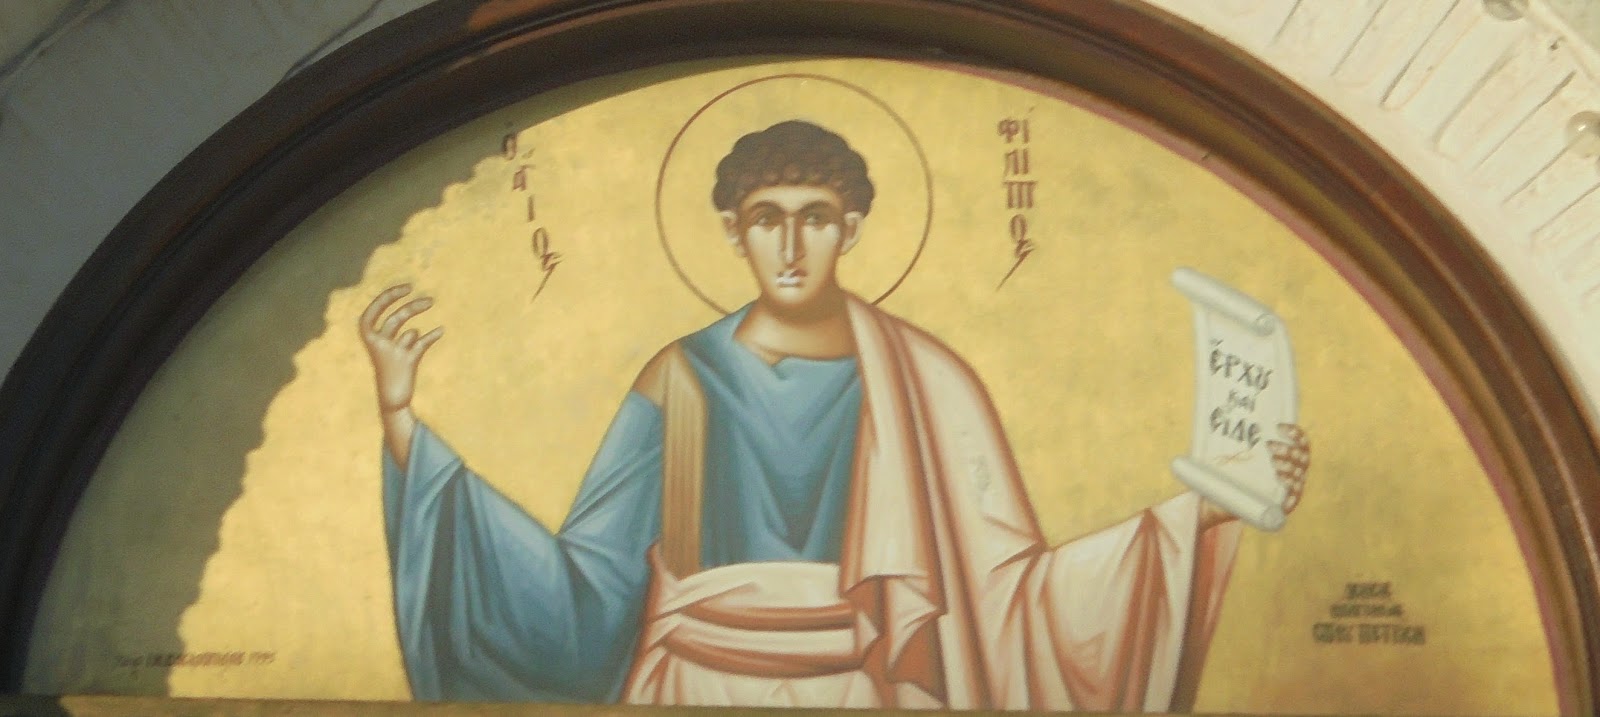 ο άγιος Φίλιππο στο Μπατσί της Άνδρου